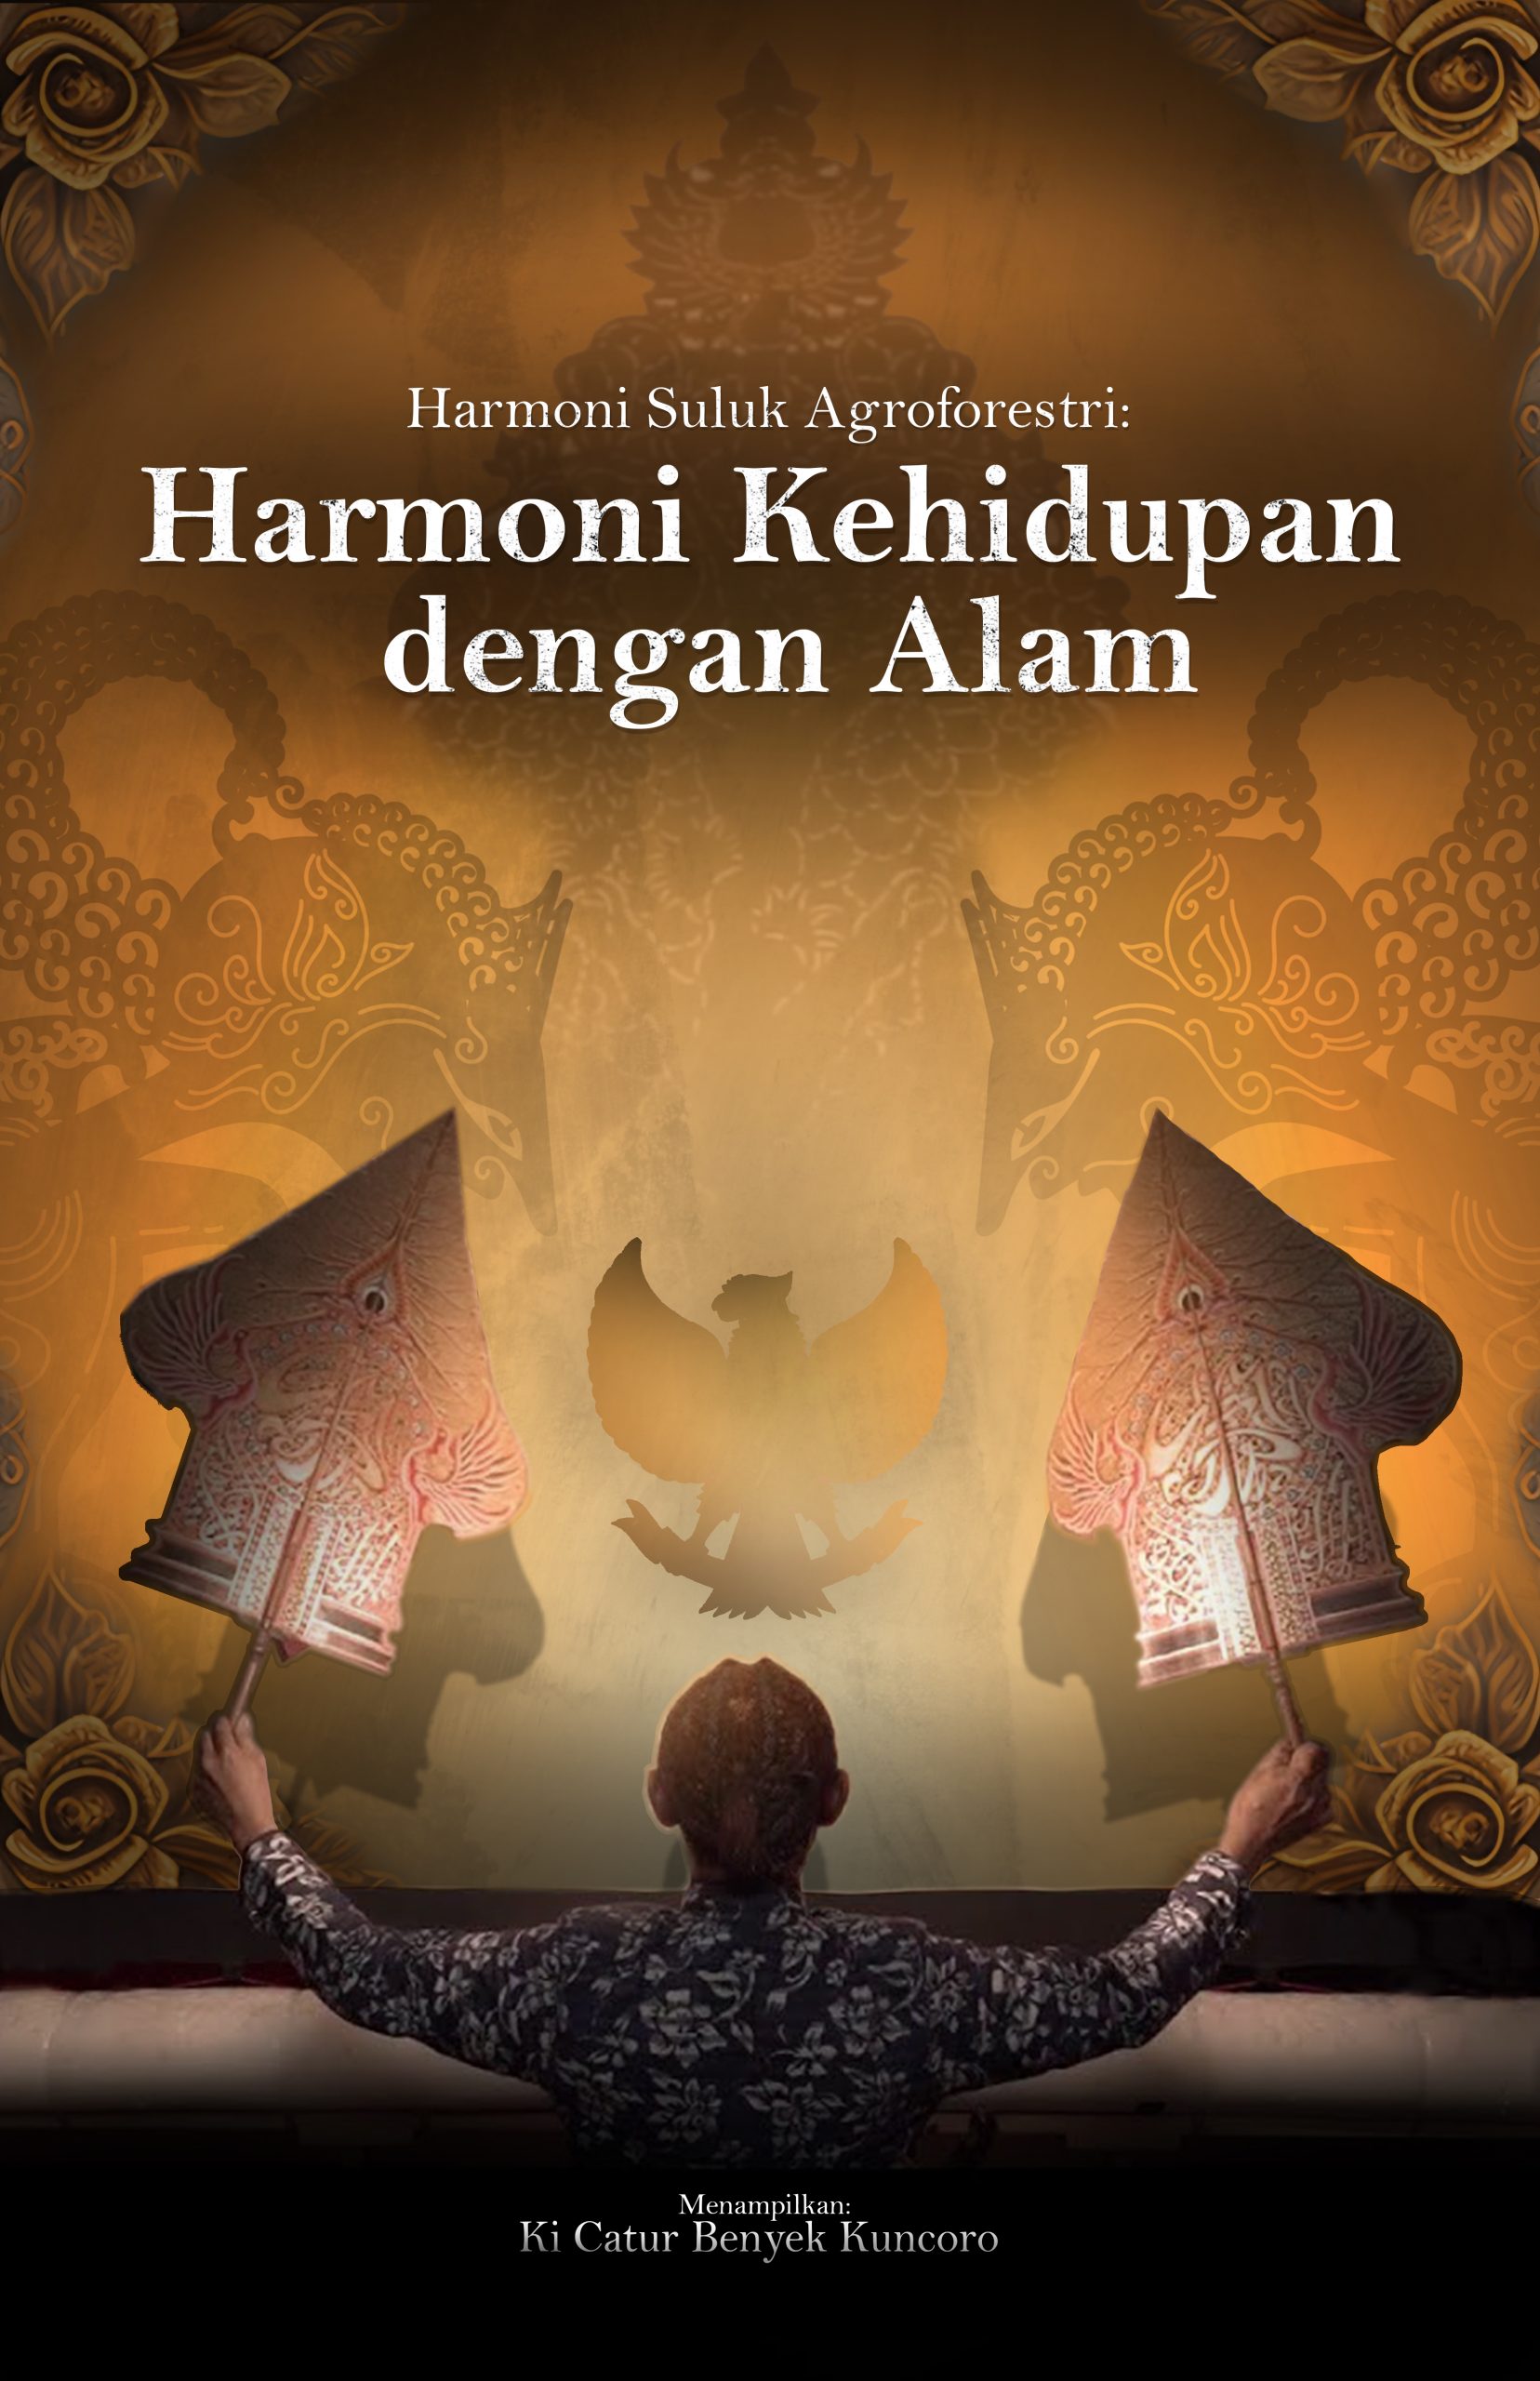 Harmoni Suluk Agroforestri